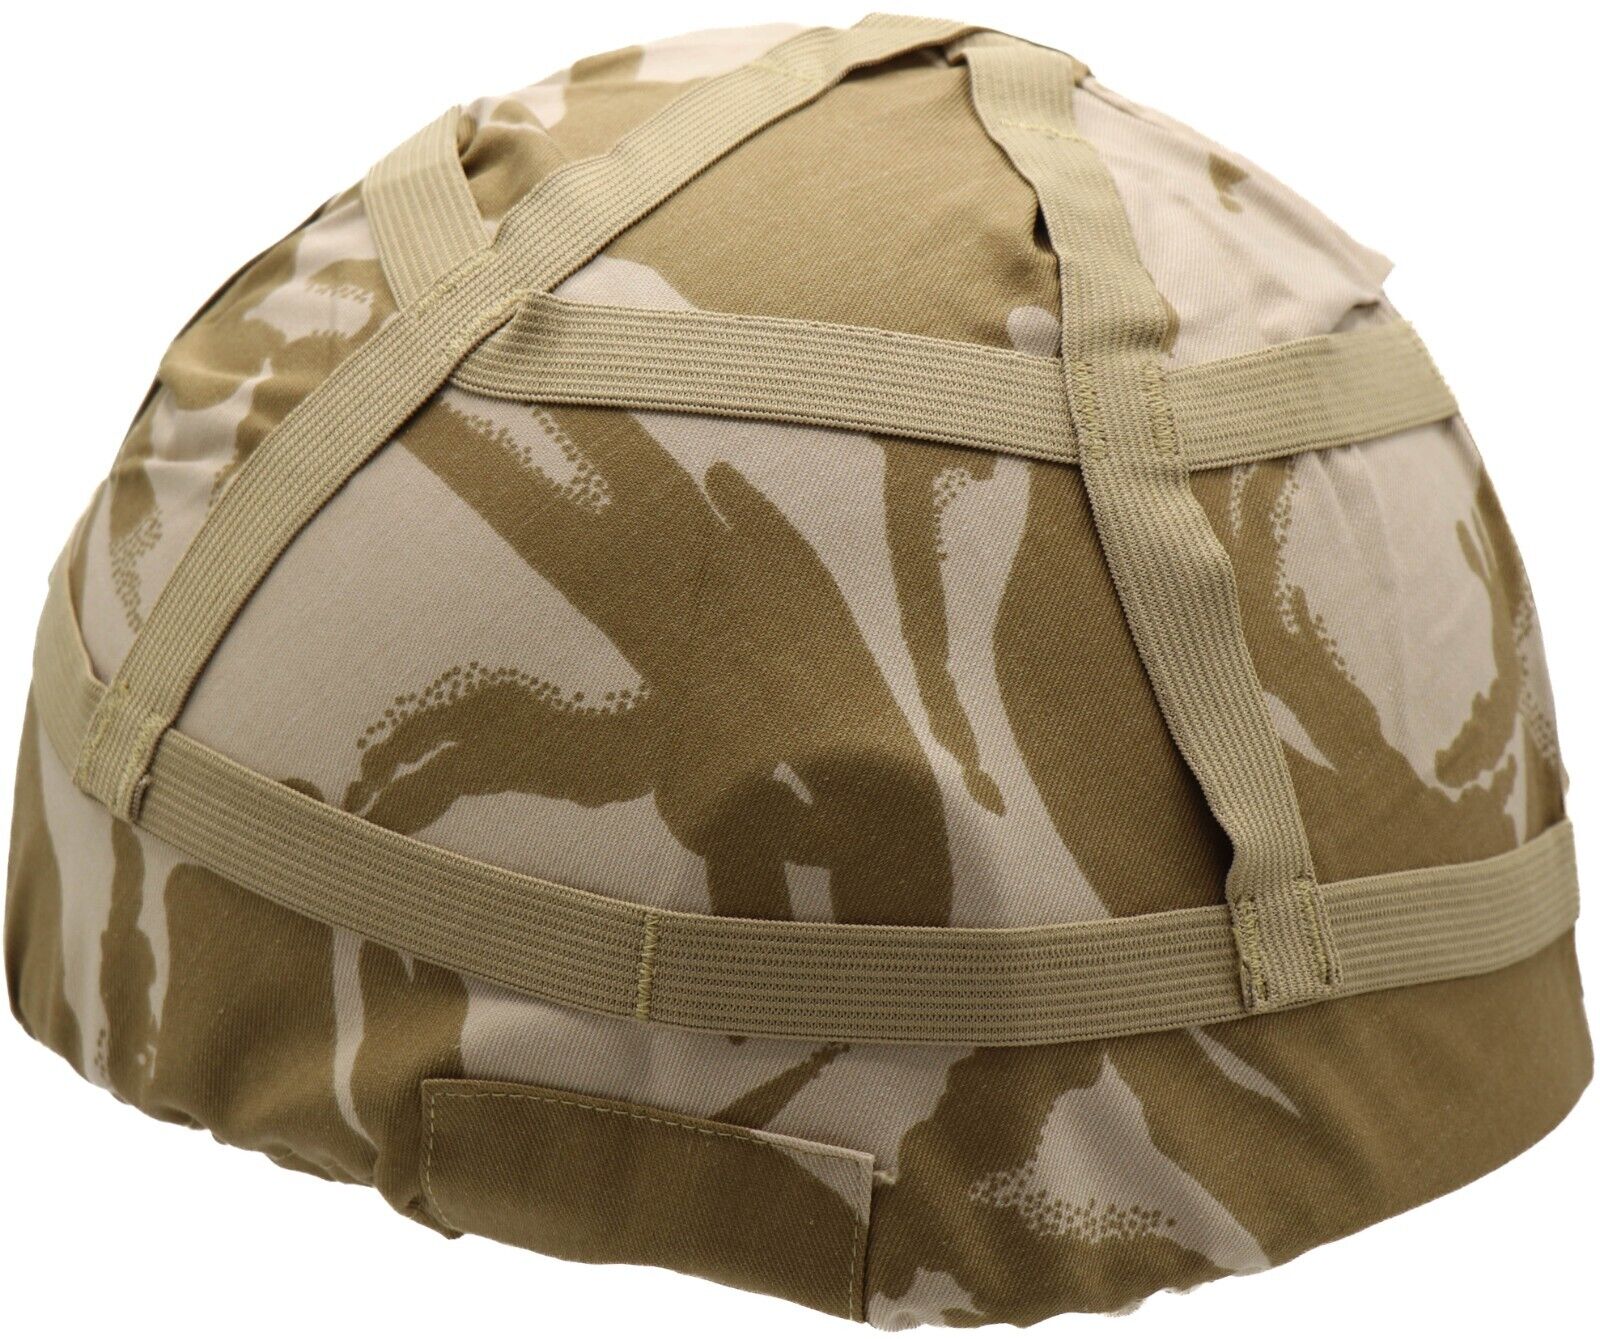 Large - New British Army Desert DPM Helmet Cover for Mk6 Helmet